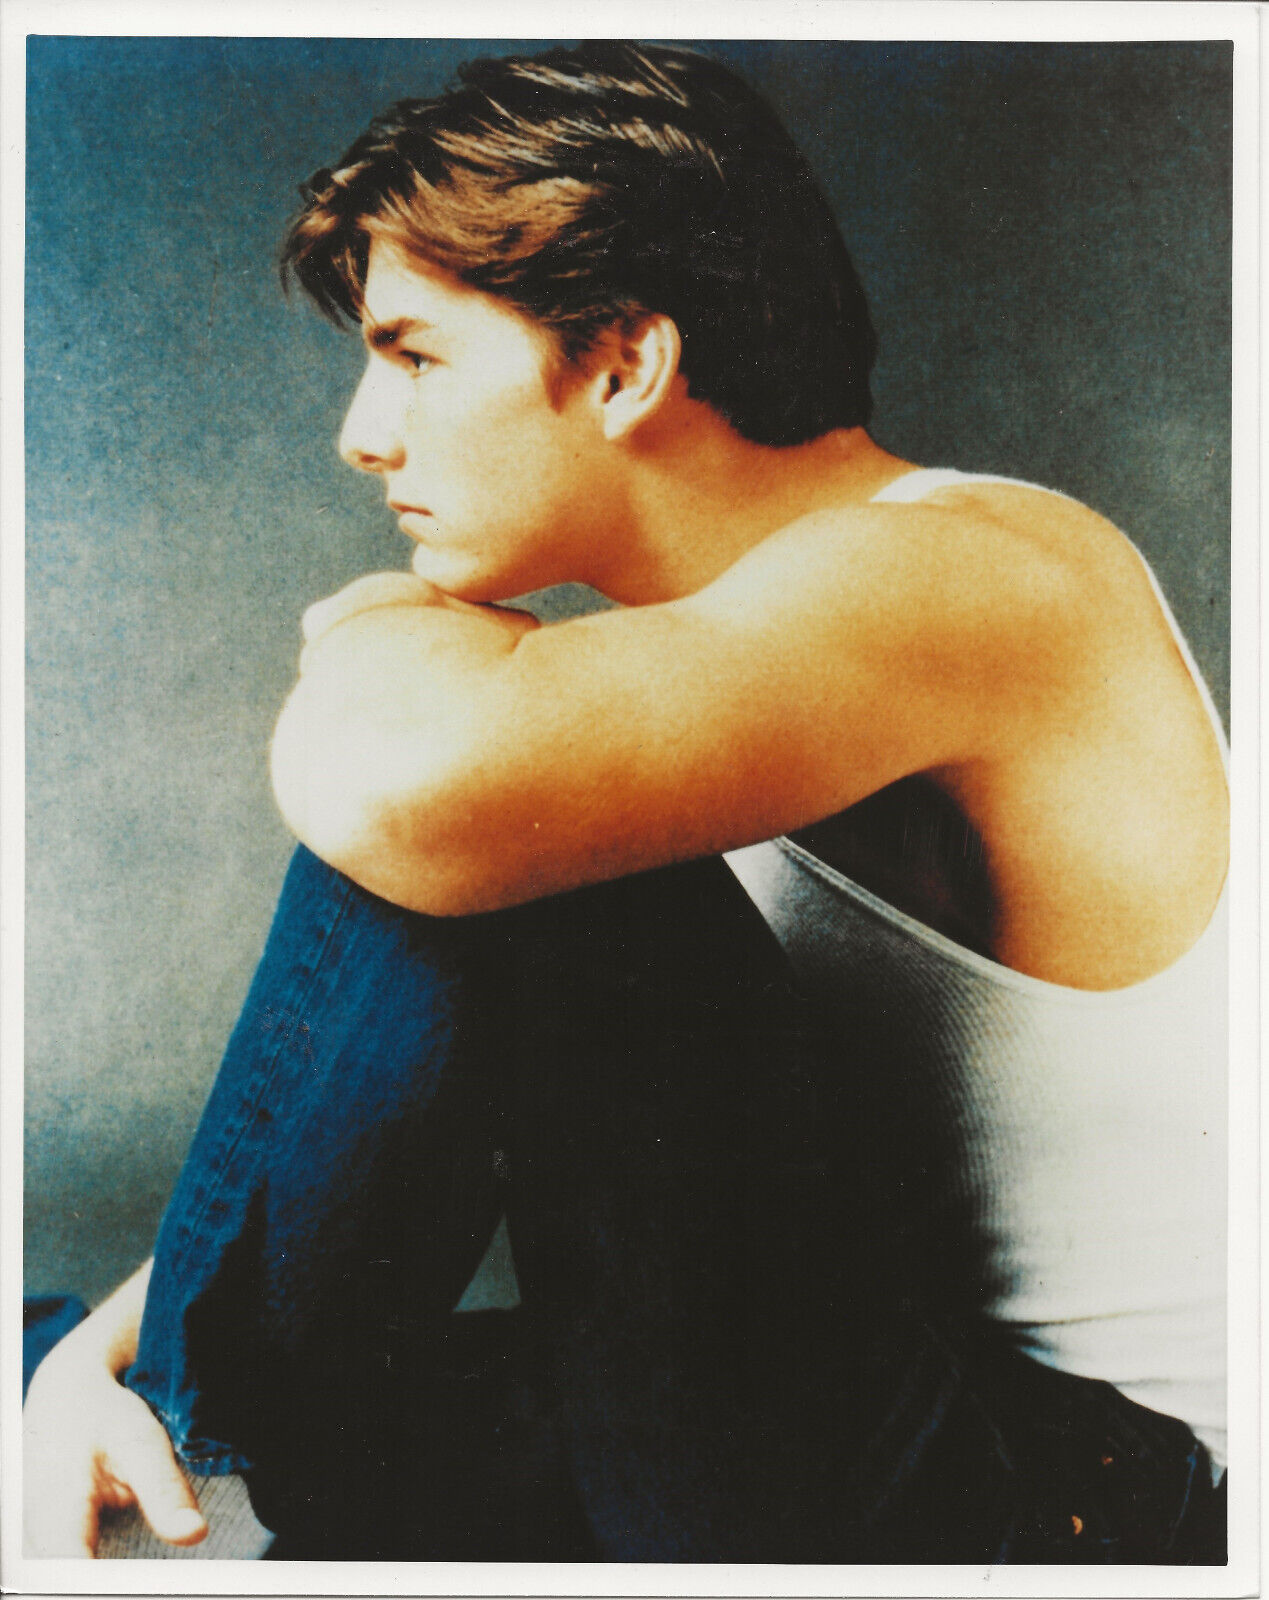 Tom Cruise 8x10 color photo E/CM 89